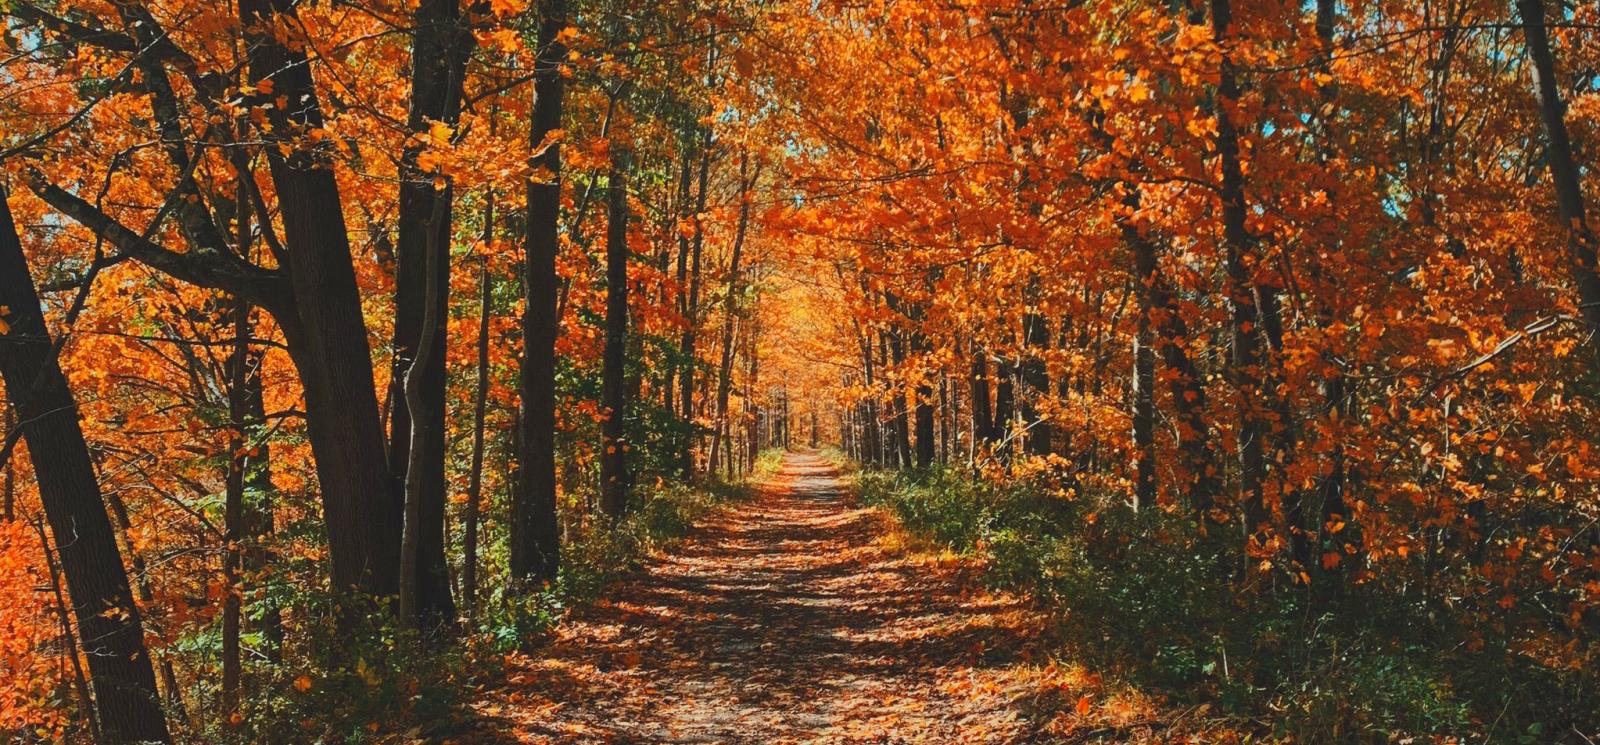 A beautiful scene of a path through the fall foliage 